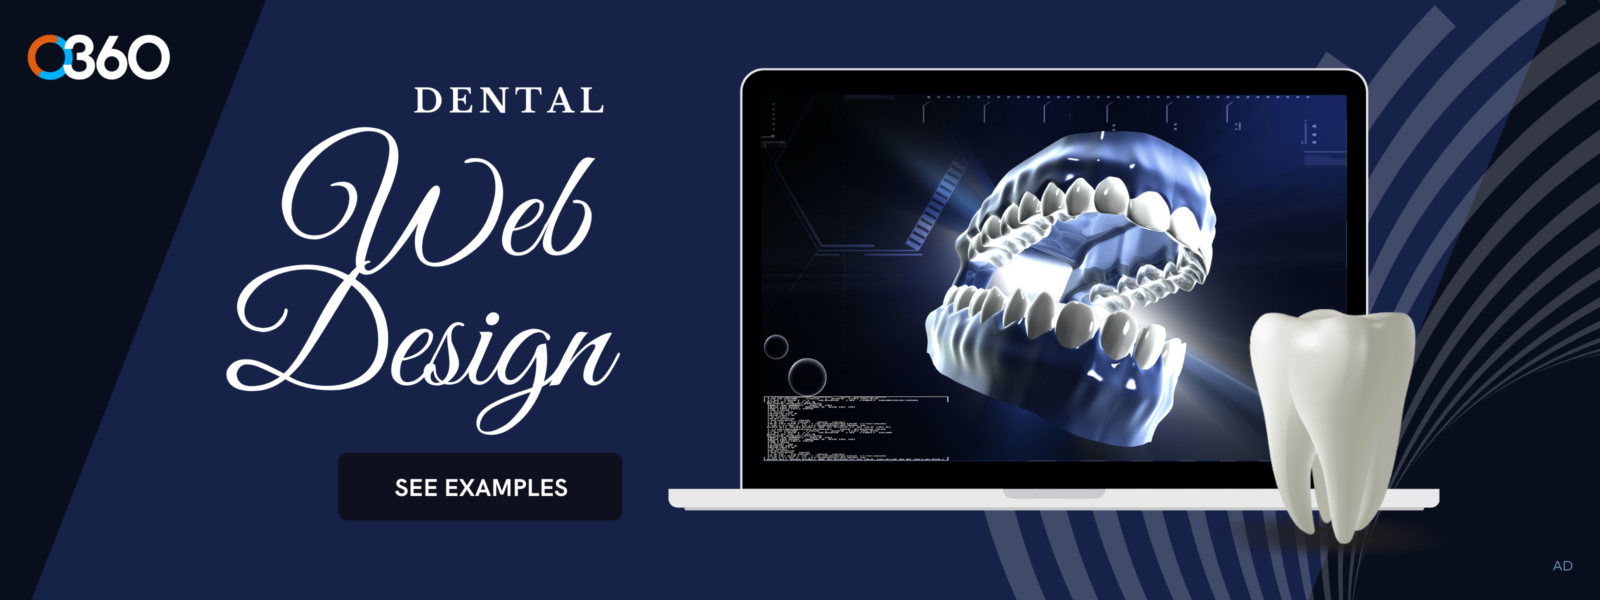 Dental lab web design o360 ad